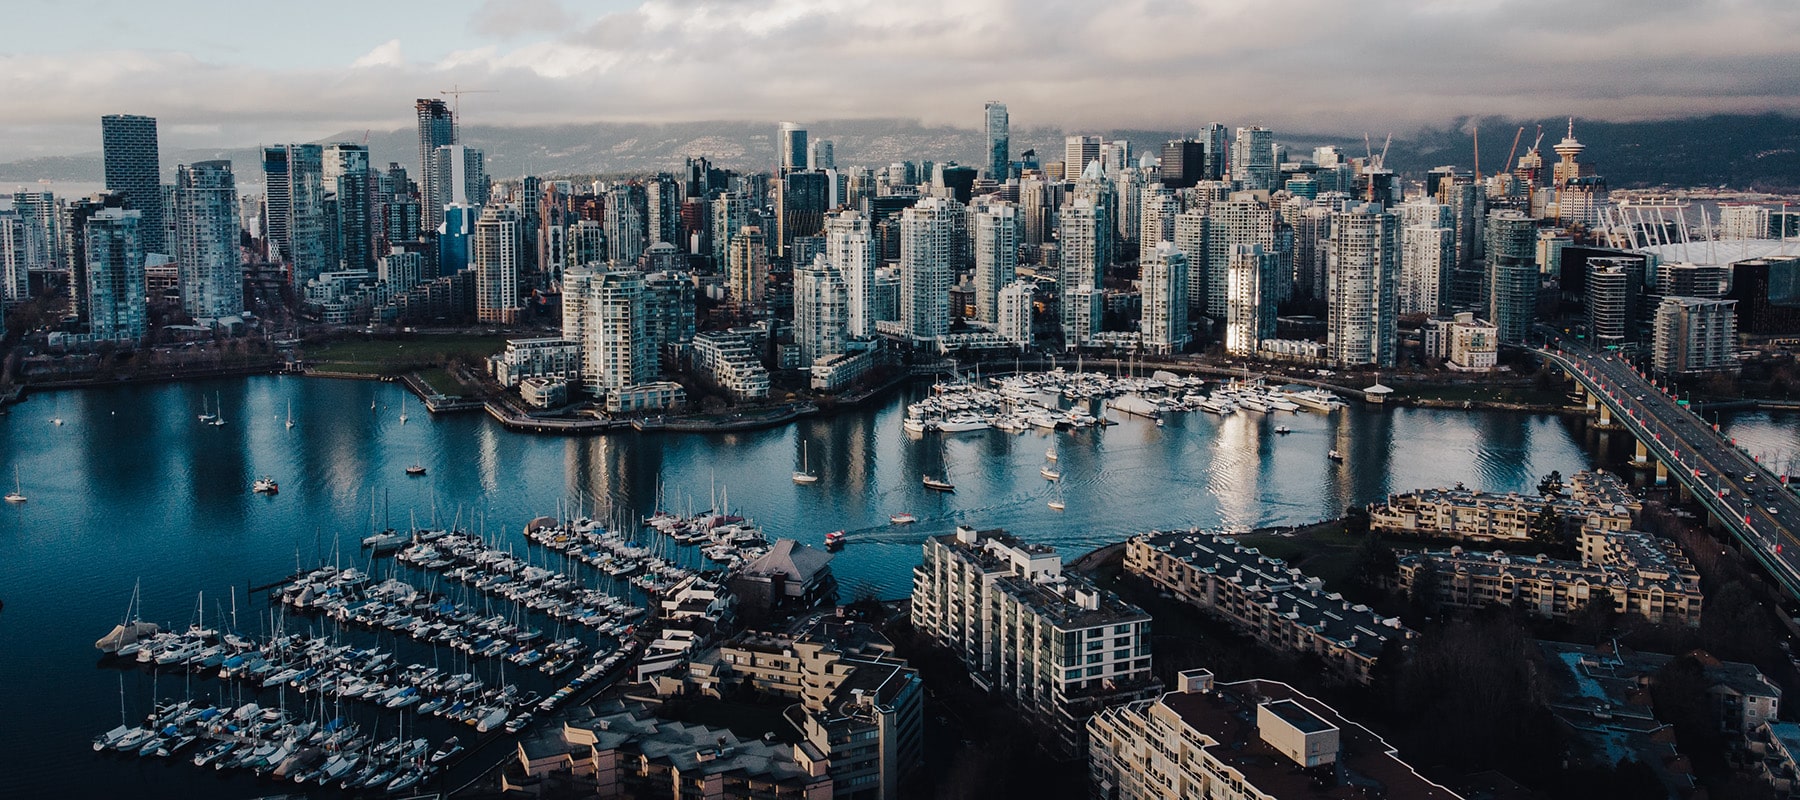 Vista dello skyline di Vancouver, in Canada, la città oggetto di questo diario di viaggio.